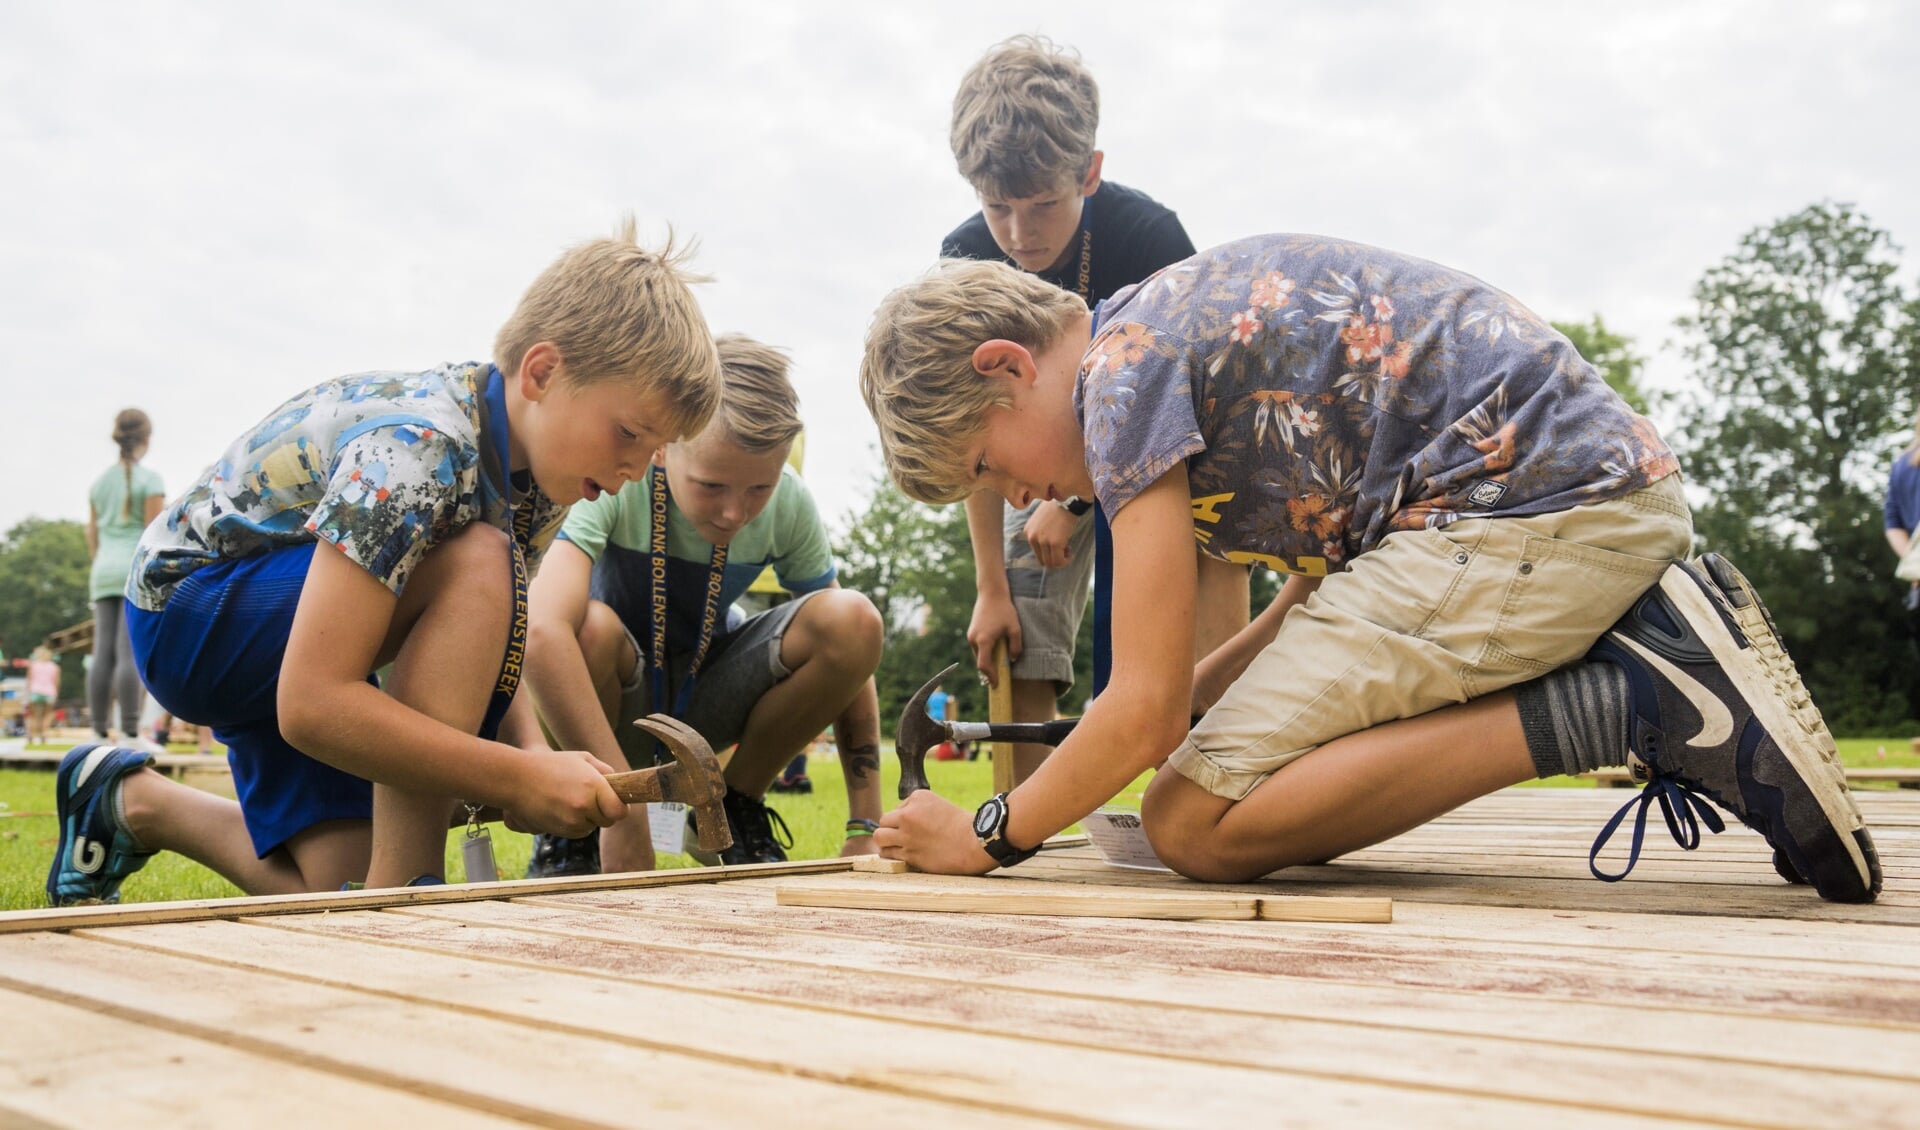 De eerst spijkers gaan het hout in voor een nieuw huttendorp. | Foto en tekst: Remco Out